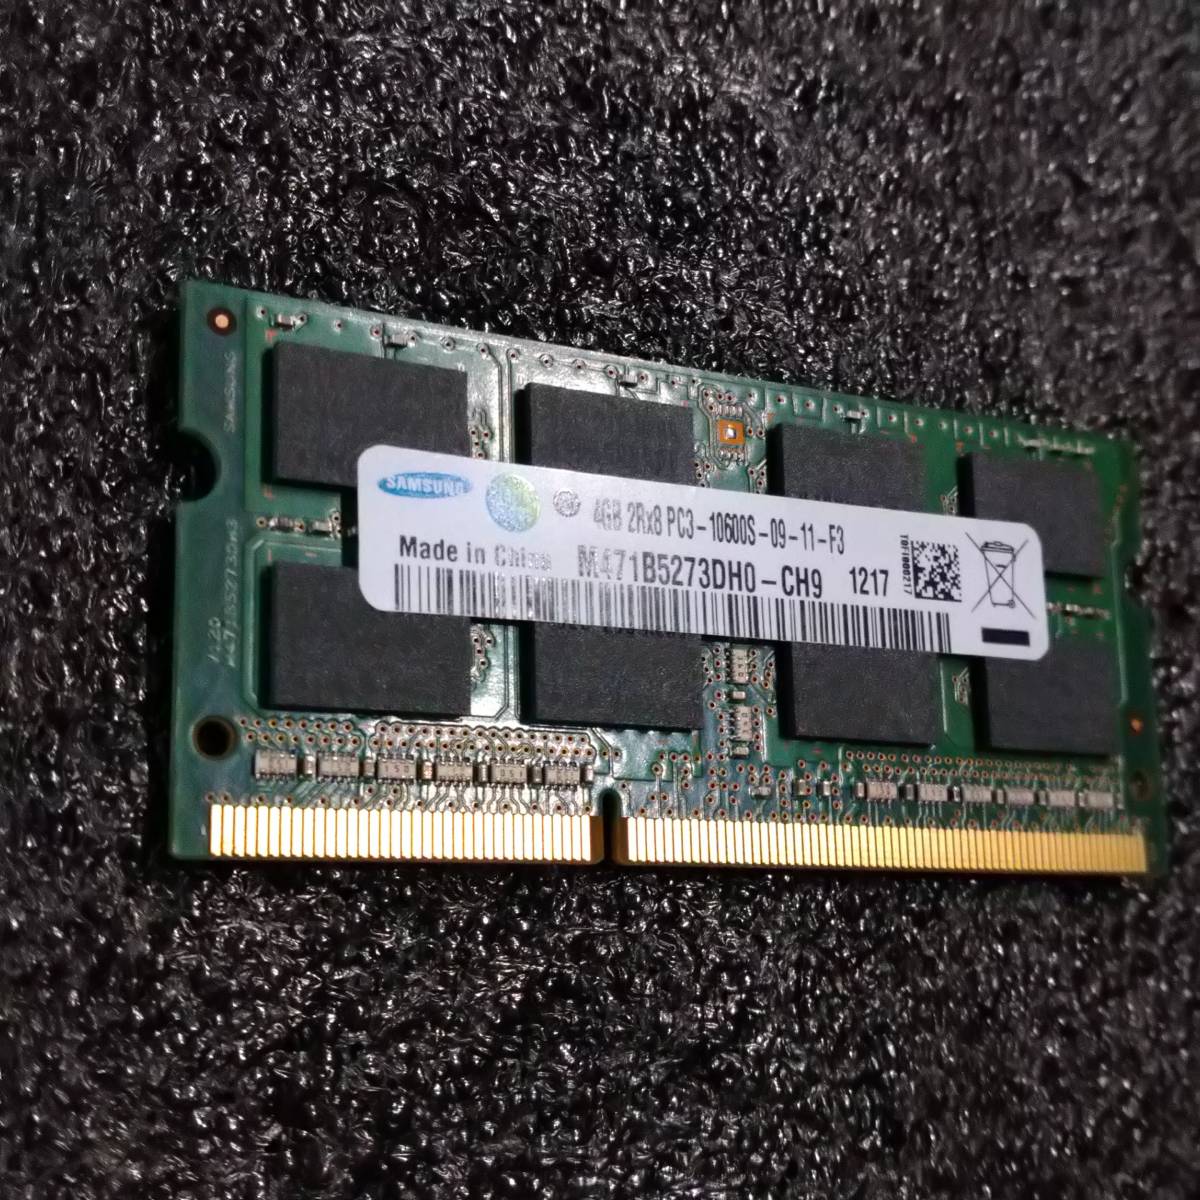 【中古】DDR3 SODIMM 4GB(4GB1枚) SAMSUNG M471B5273DH0-CH9 [DDR3-1333 PC3-10600 1.5V]_画像2